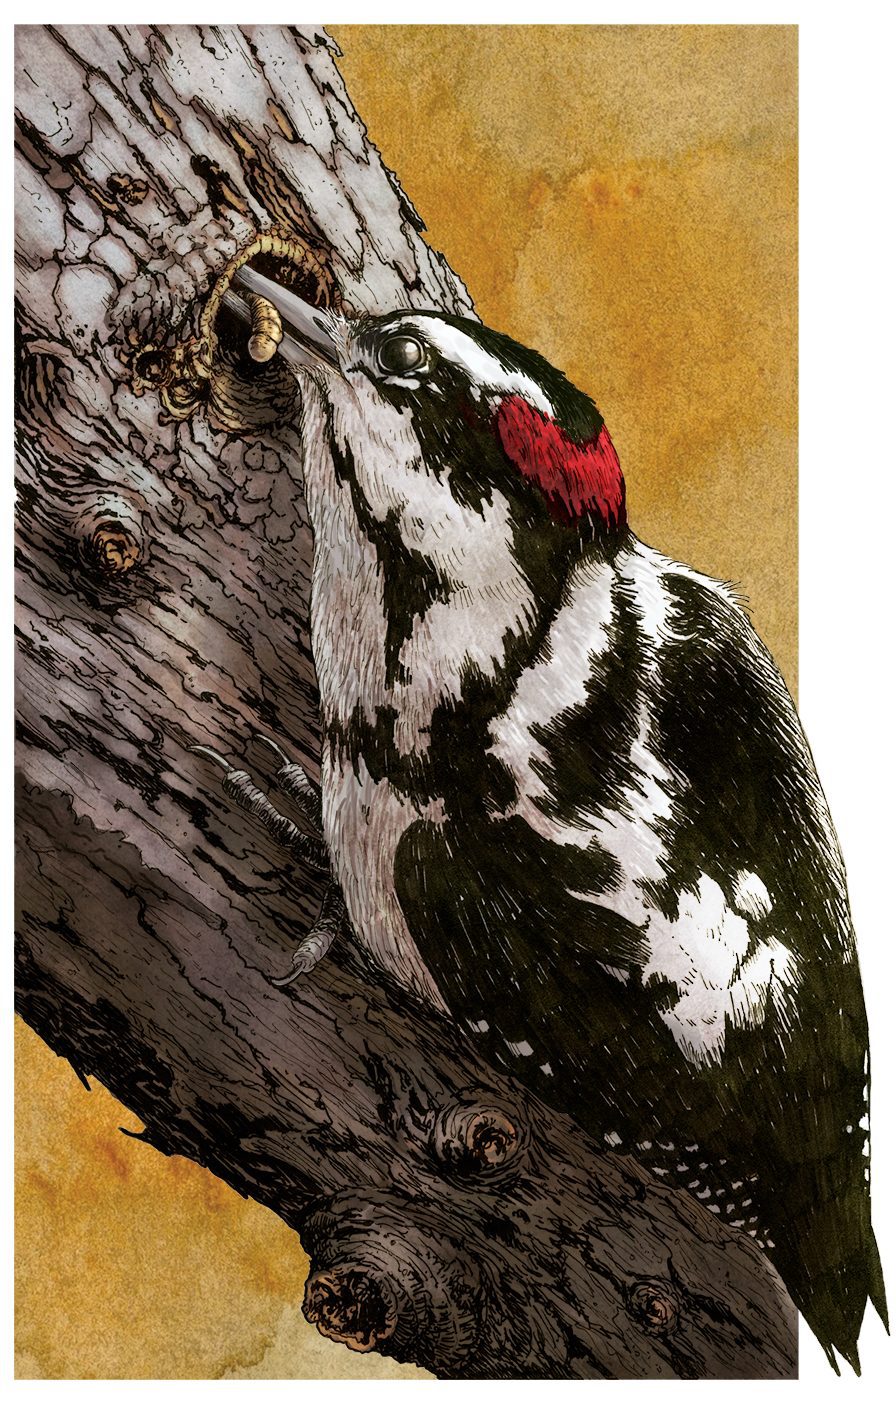 Downy Woodpecker by Bartels Science Illustrator Phillip Krzeminski